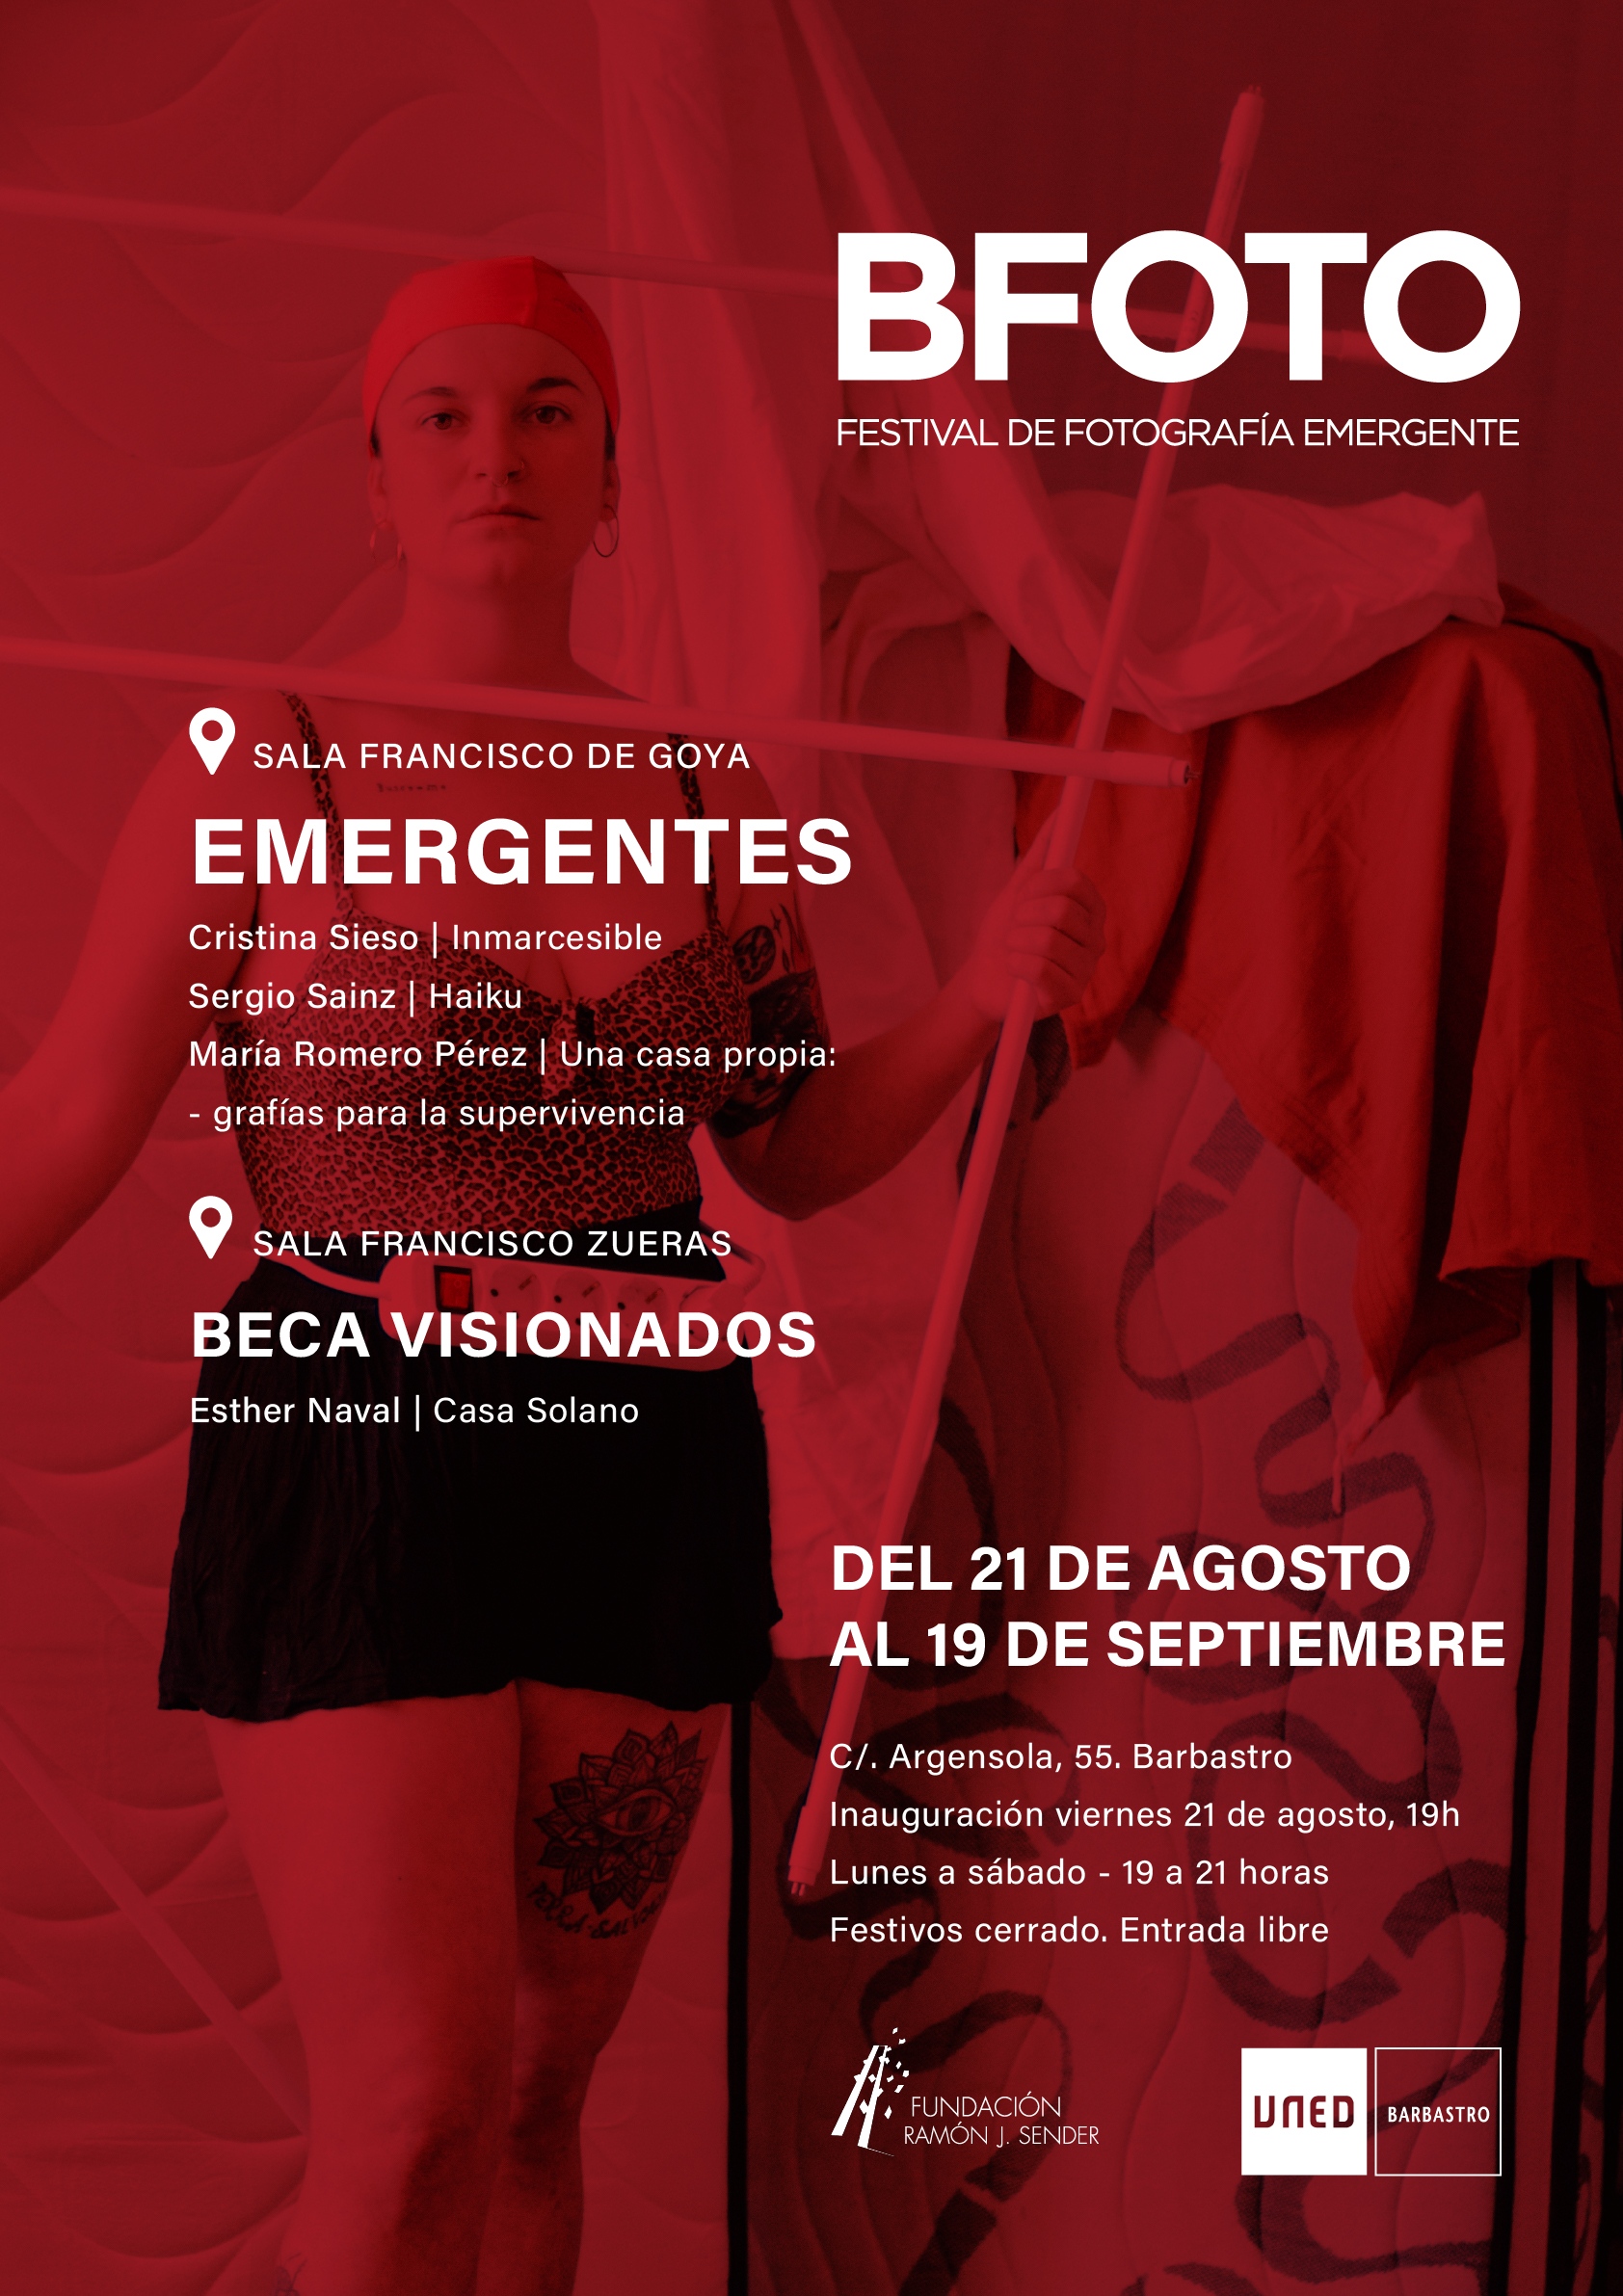 Diseño gráfico, web e ilustración en Huesca